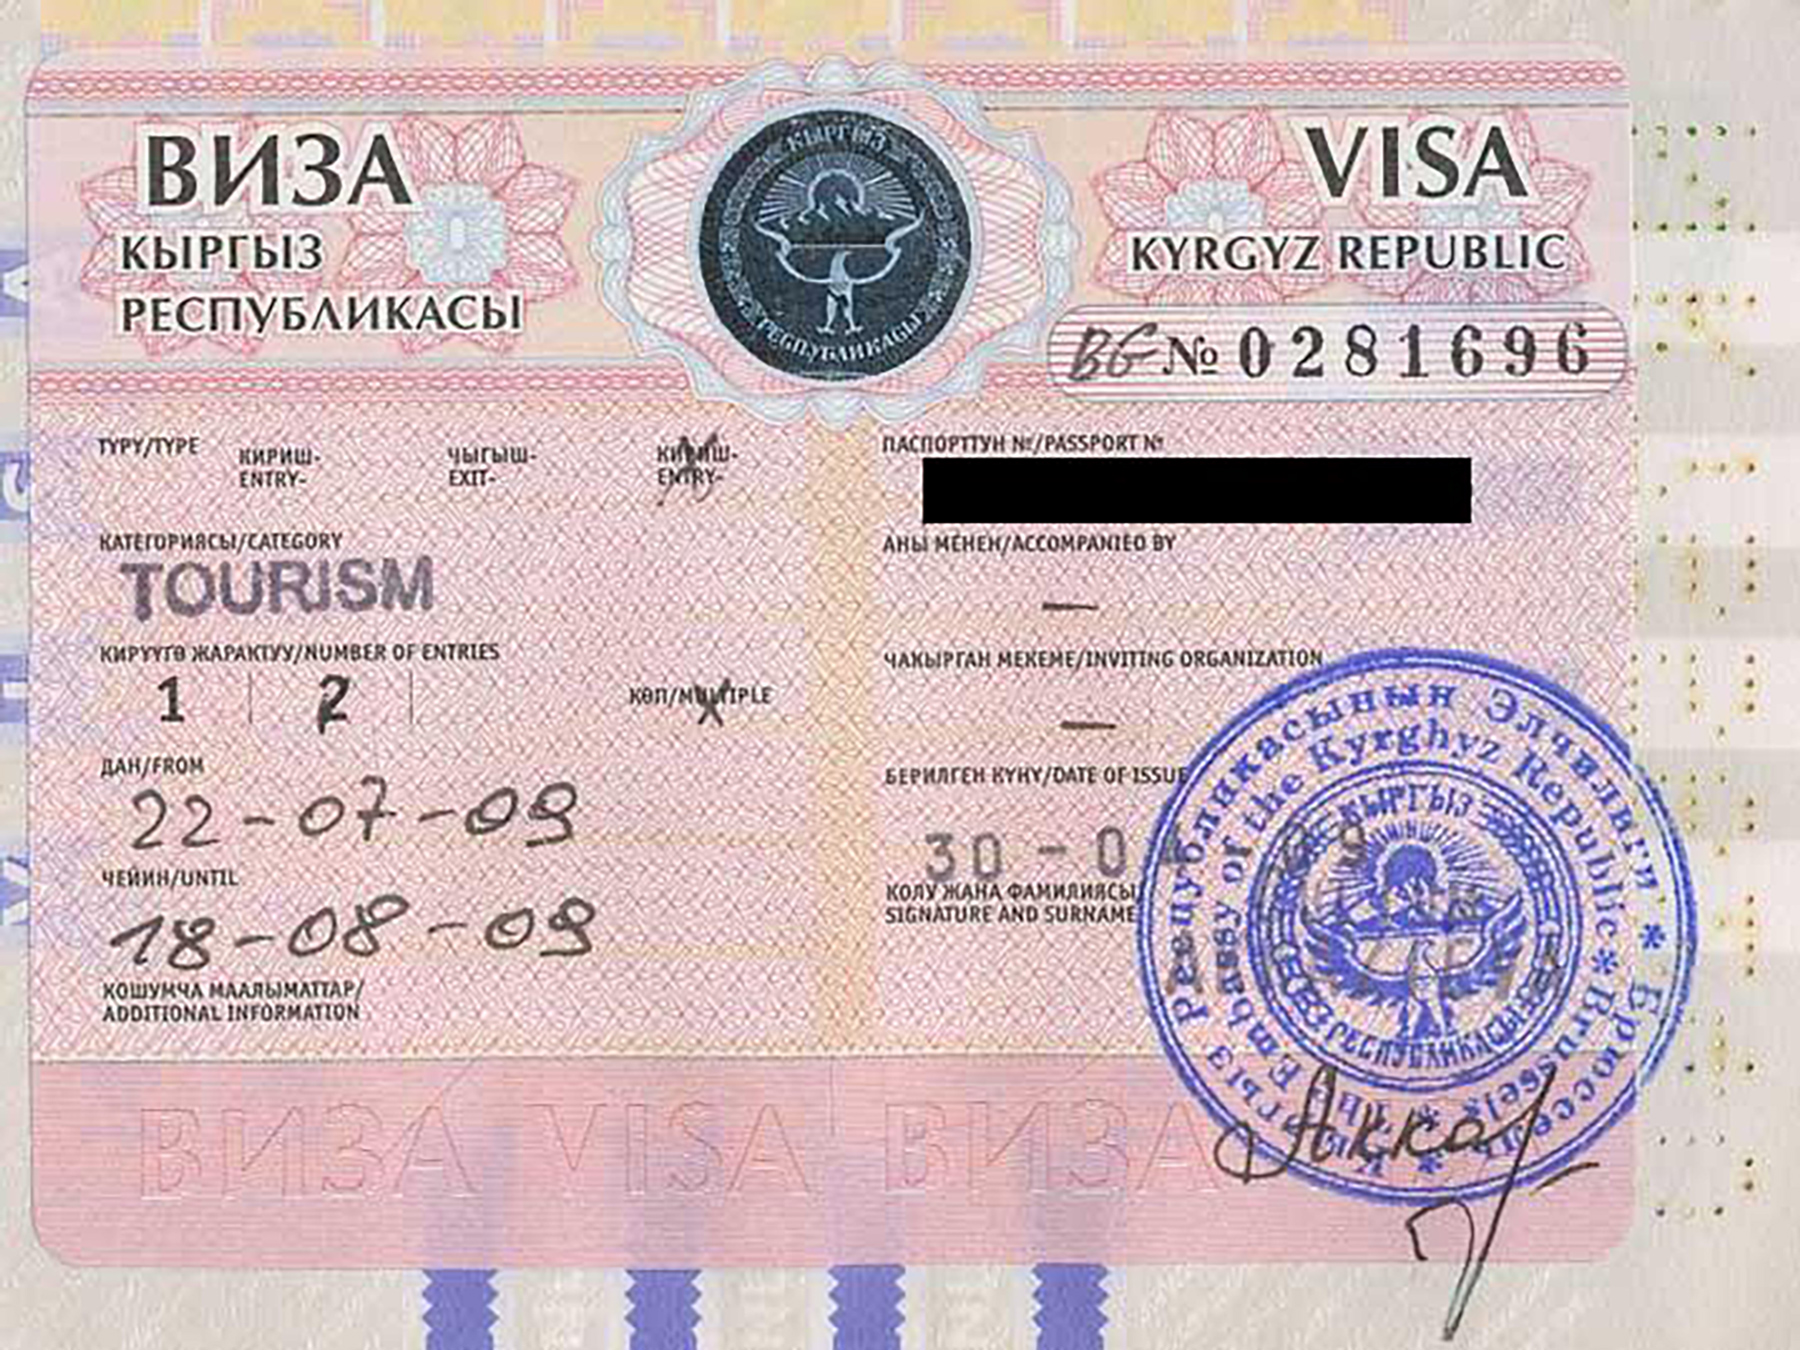 Как можно перенести визу в новый загранпаспорт из старого